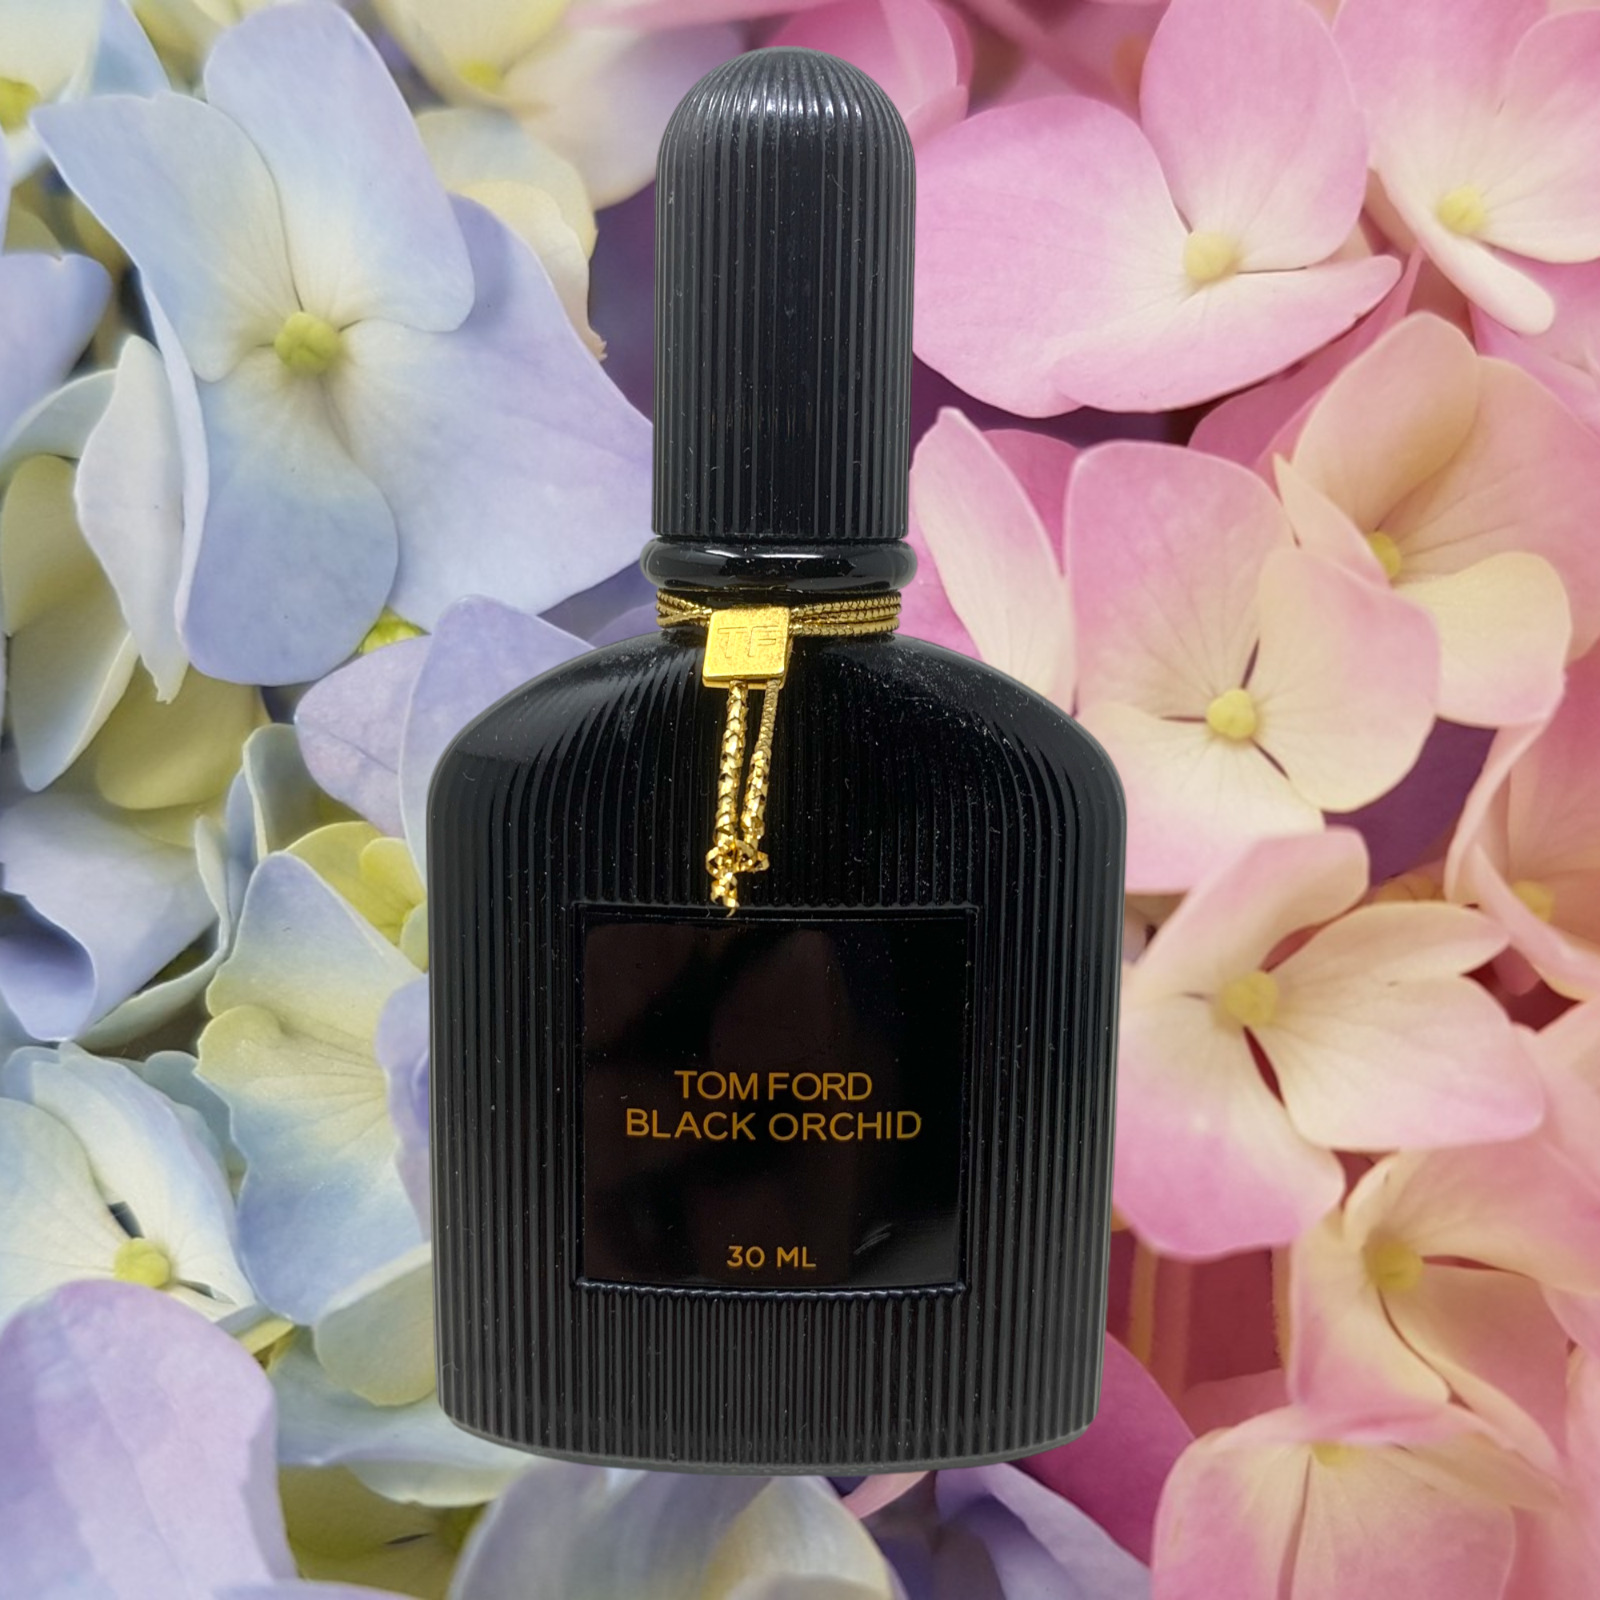 Tom Ford Black Orchid 1 oz 30 mL EDT Eau De Toilette Spray Fragrance @ 50% Full